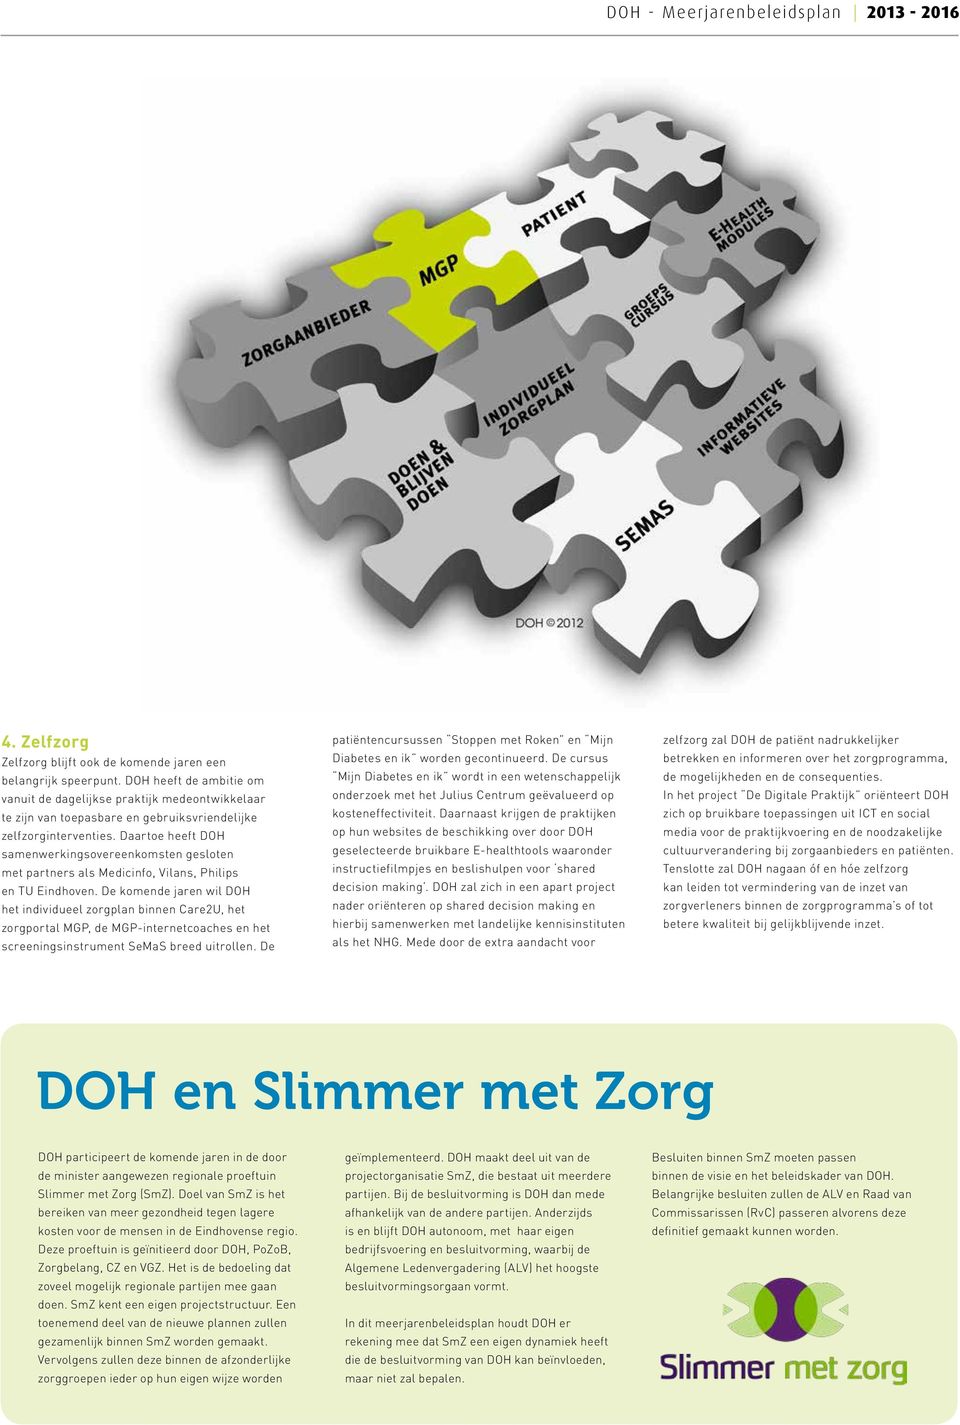 Daartoe heeft DOH samenwerkingsovereenkomsten gesloten met partners als Medicinfo, Vilans, Philips en TU Eindhoven.